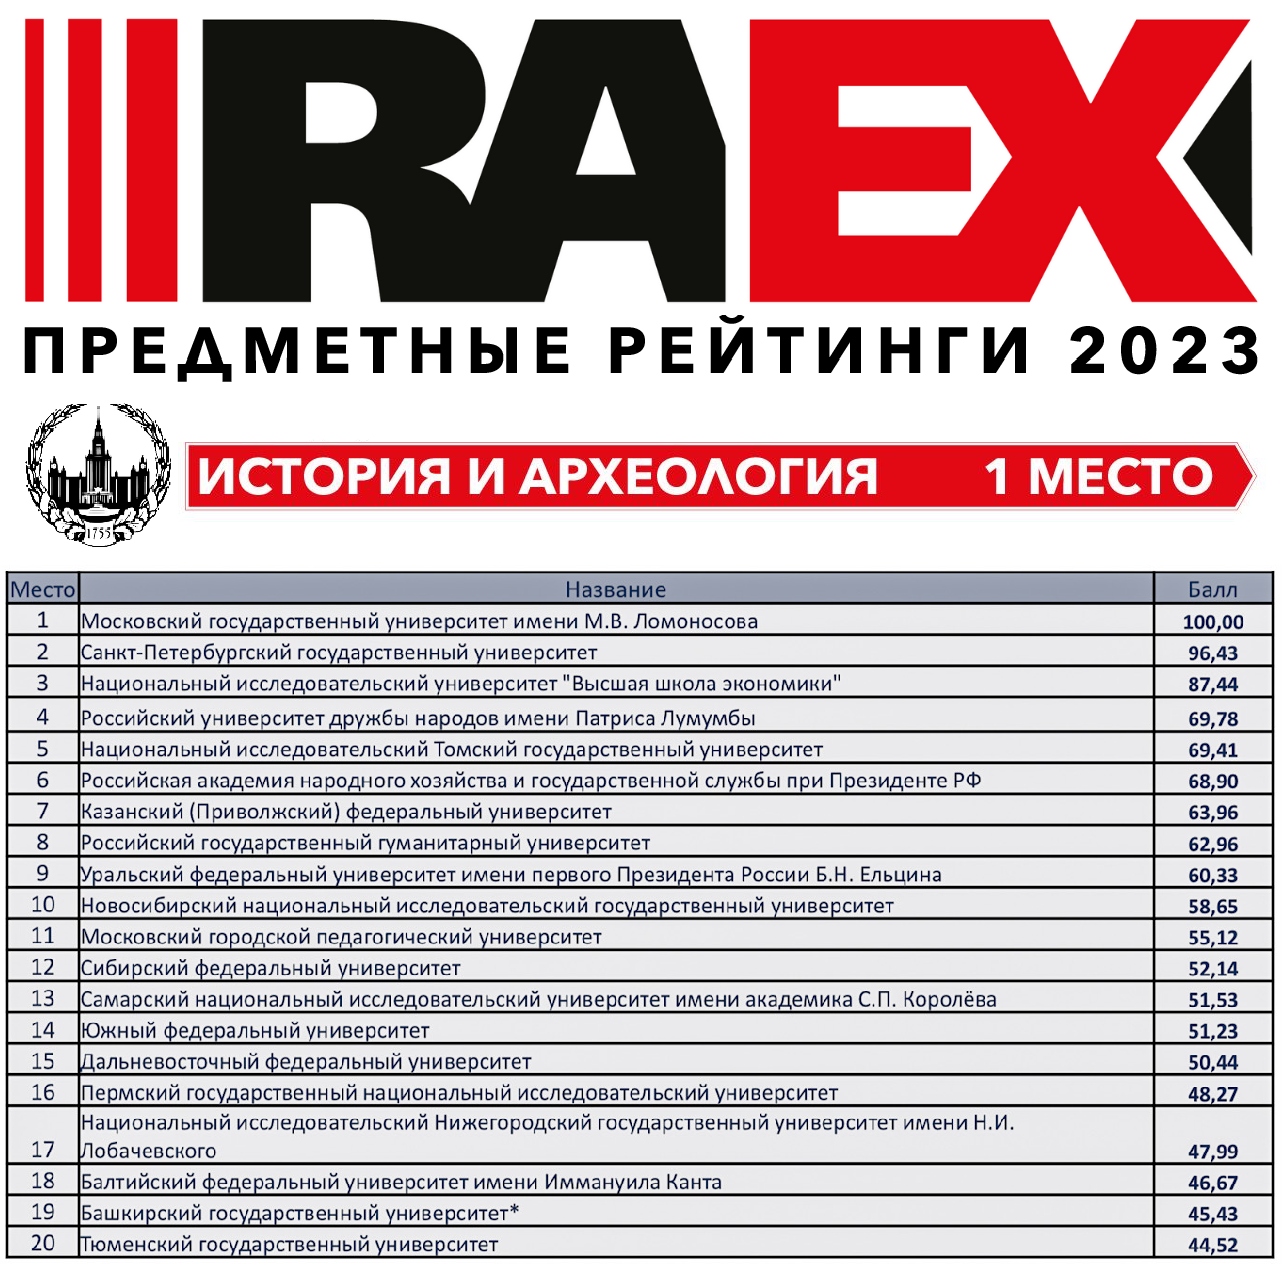 МГУ занял первое место в предметном рейтинге "История и археология", составленном аналитиками RAEX